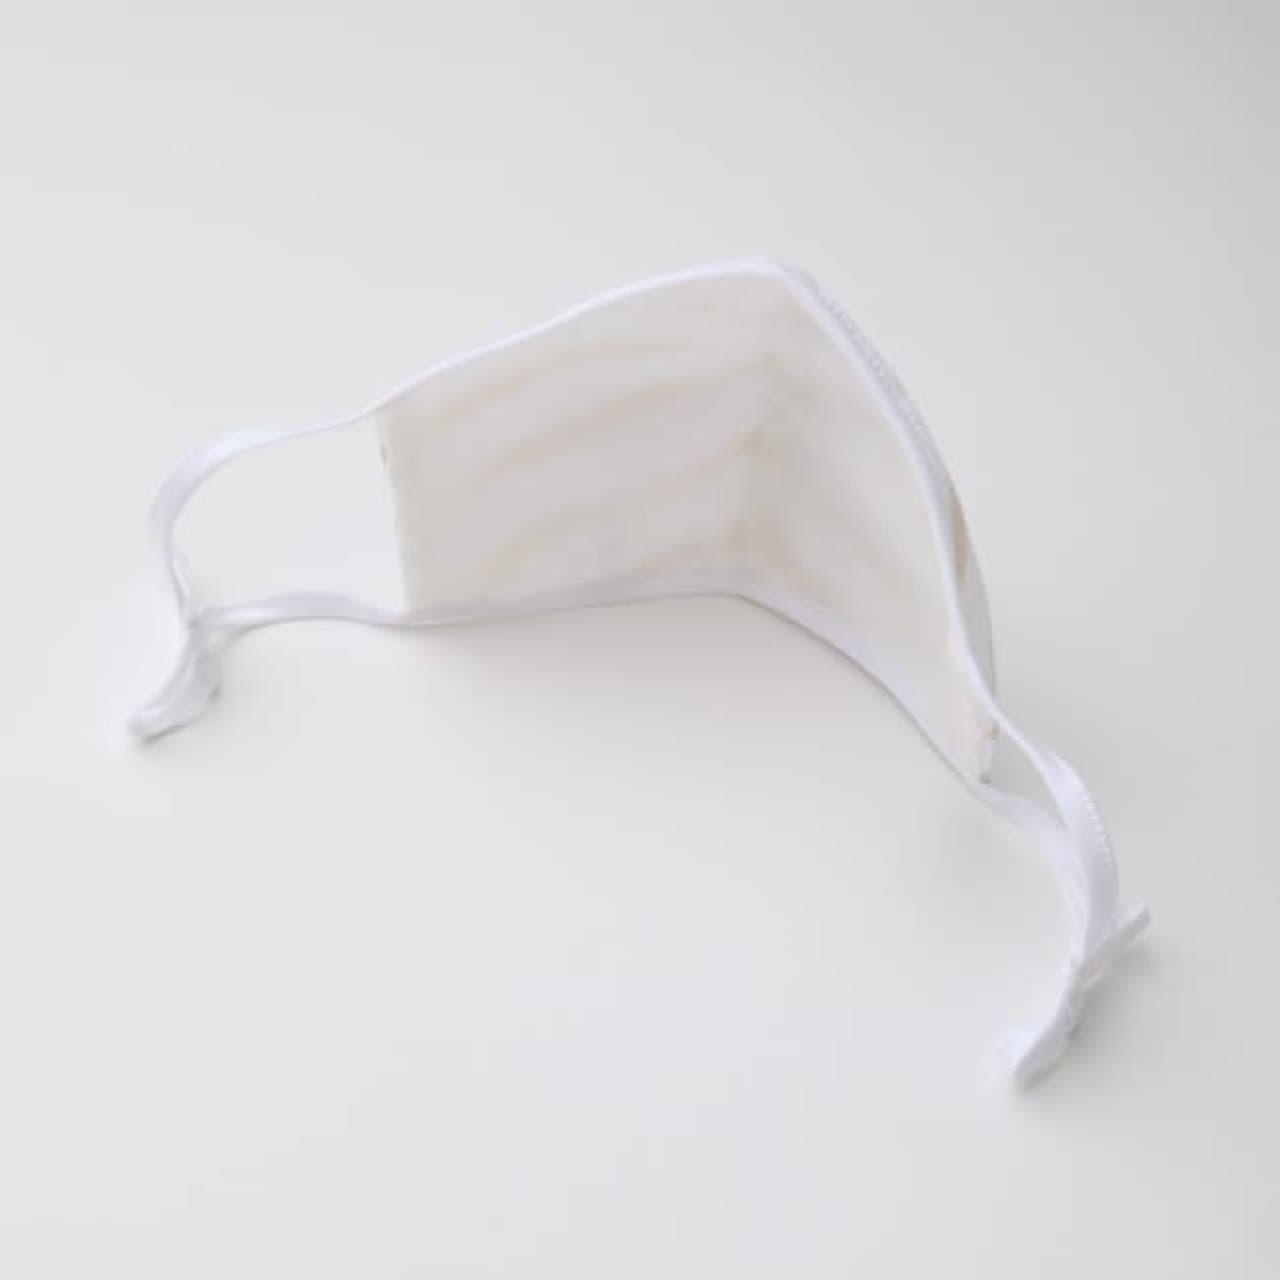 The third original cloth mask product from Sanyo Shokai